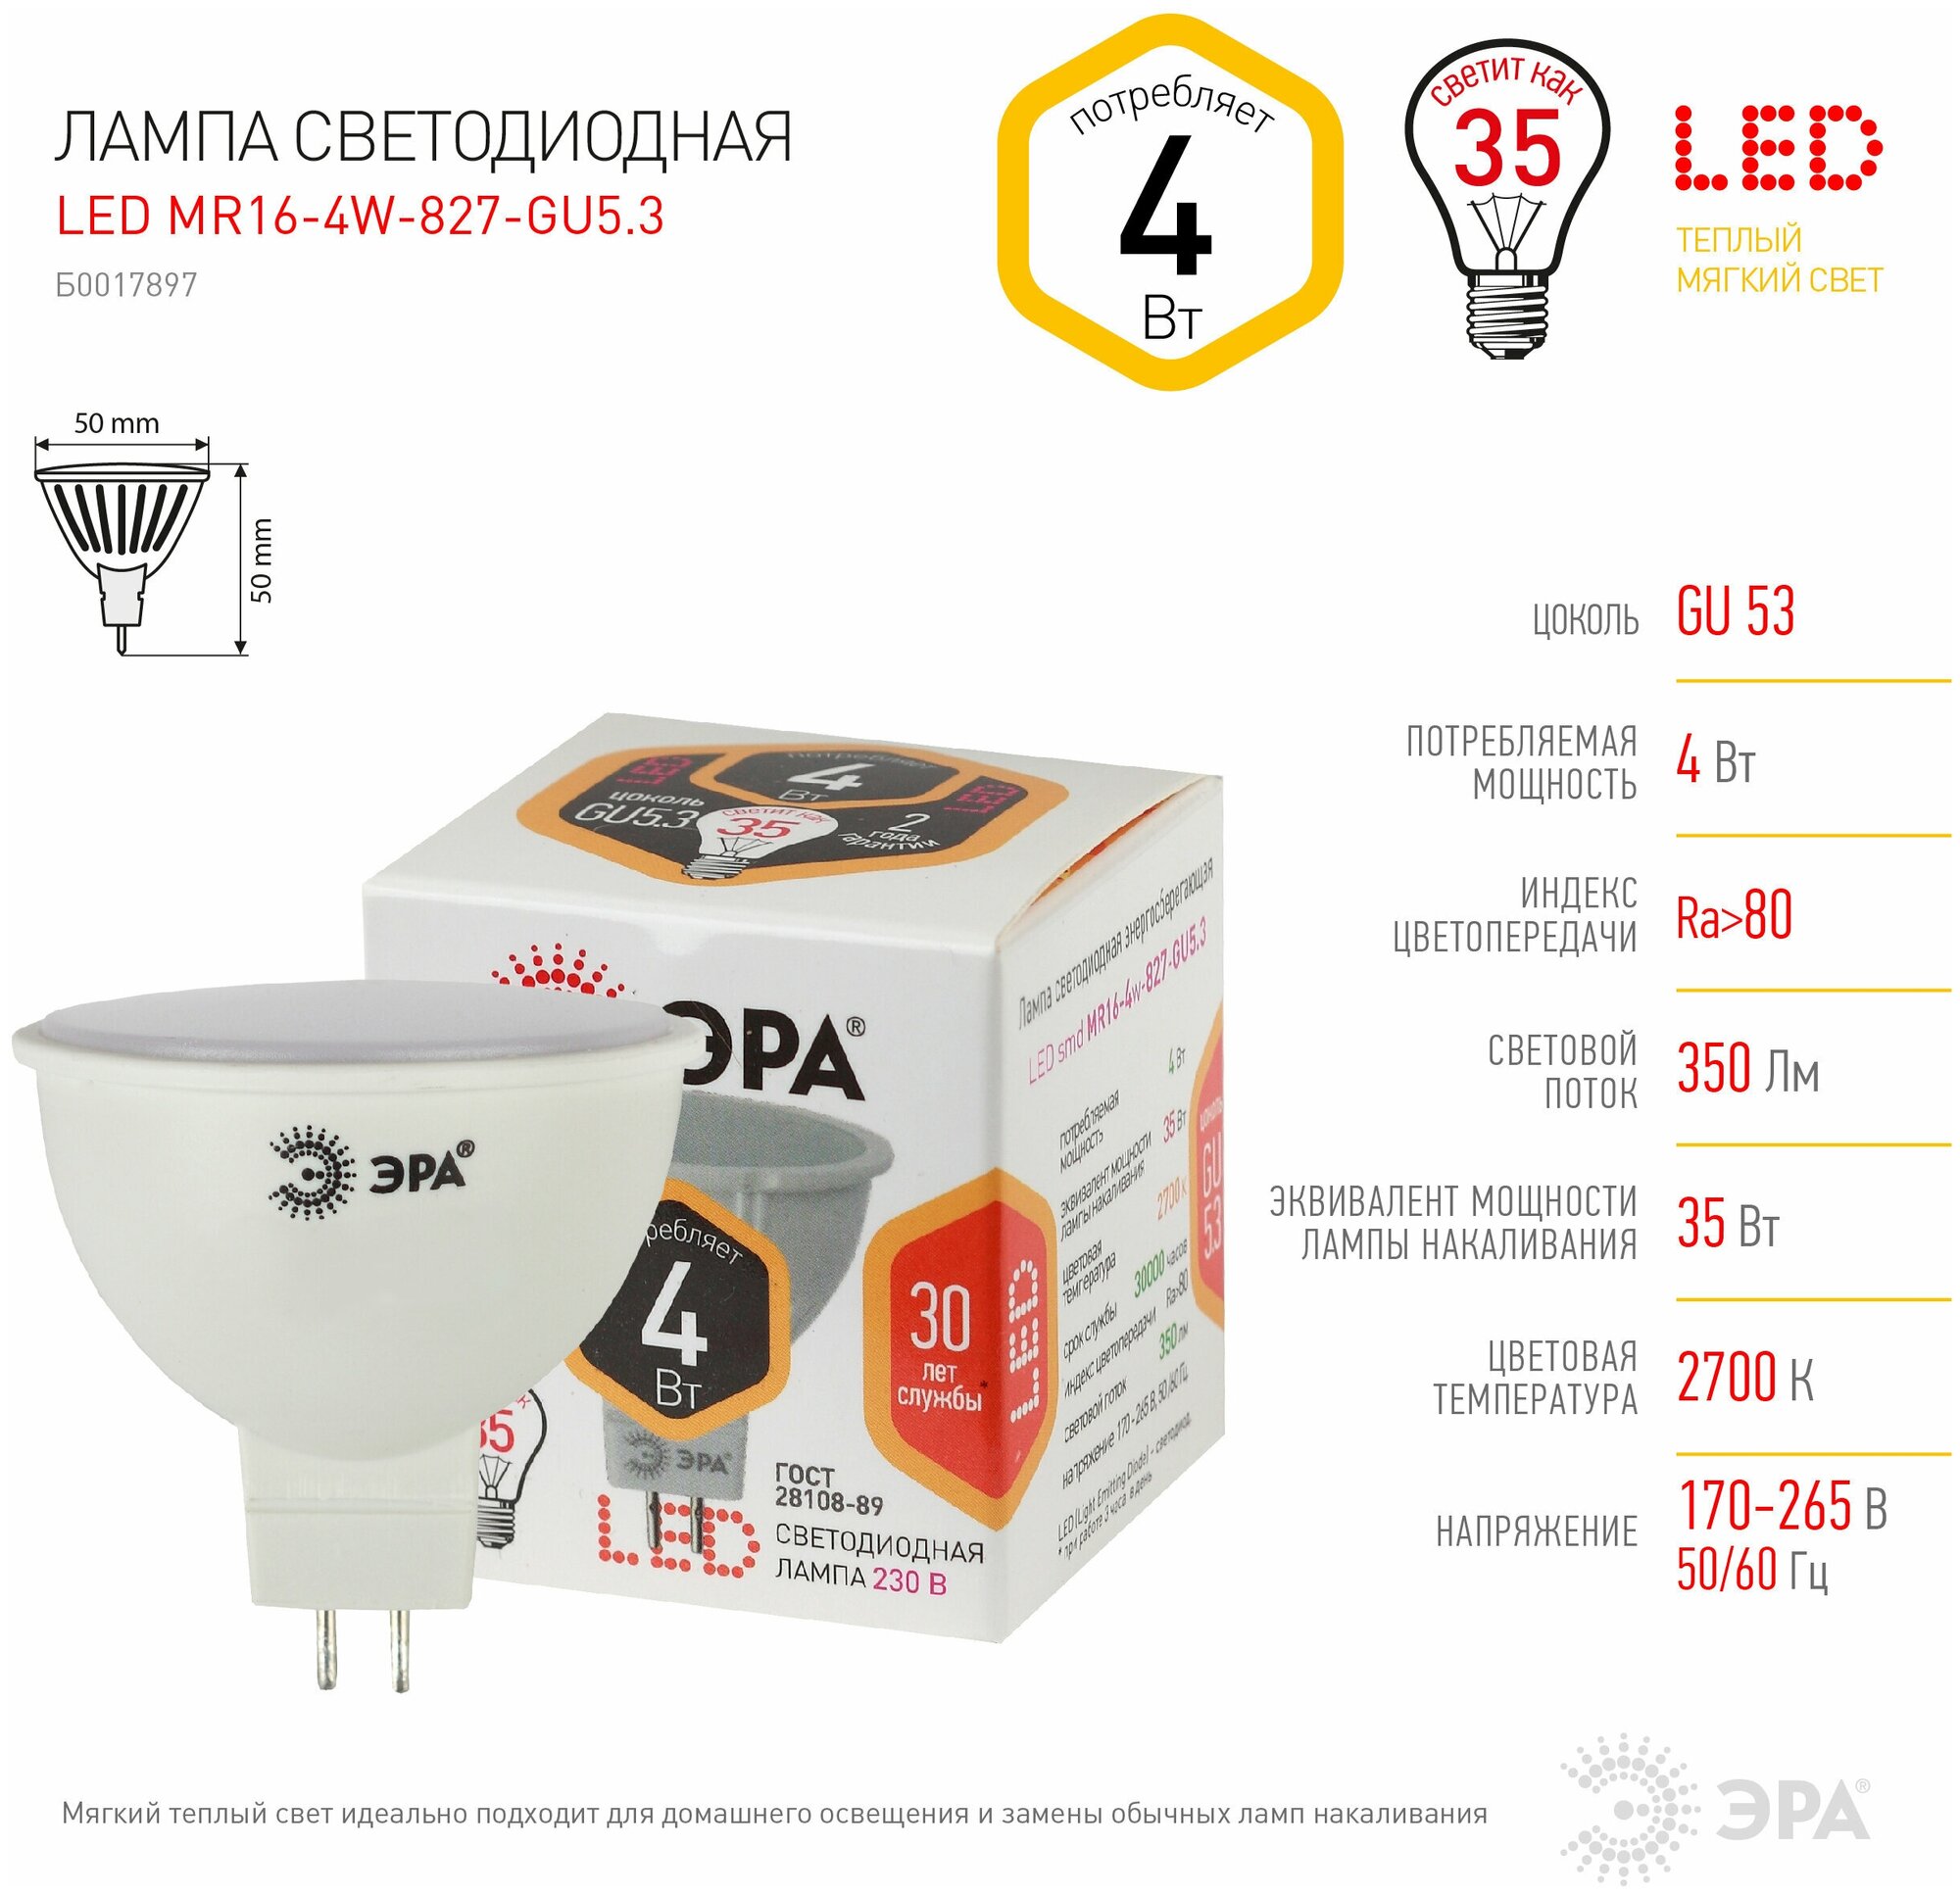 Лампа светодиодная ЭРА 4 (35) Вт цоколь GU5.3 MR16 теплый белый свет 30000 ч LED smdMR16-4w-827-GU5.3